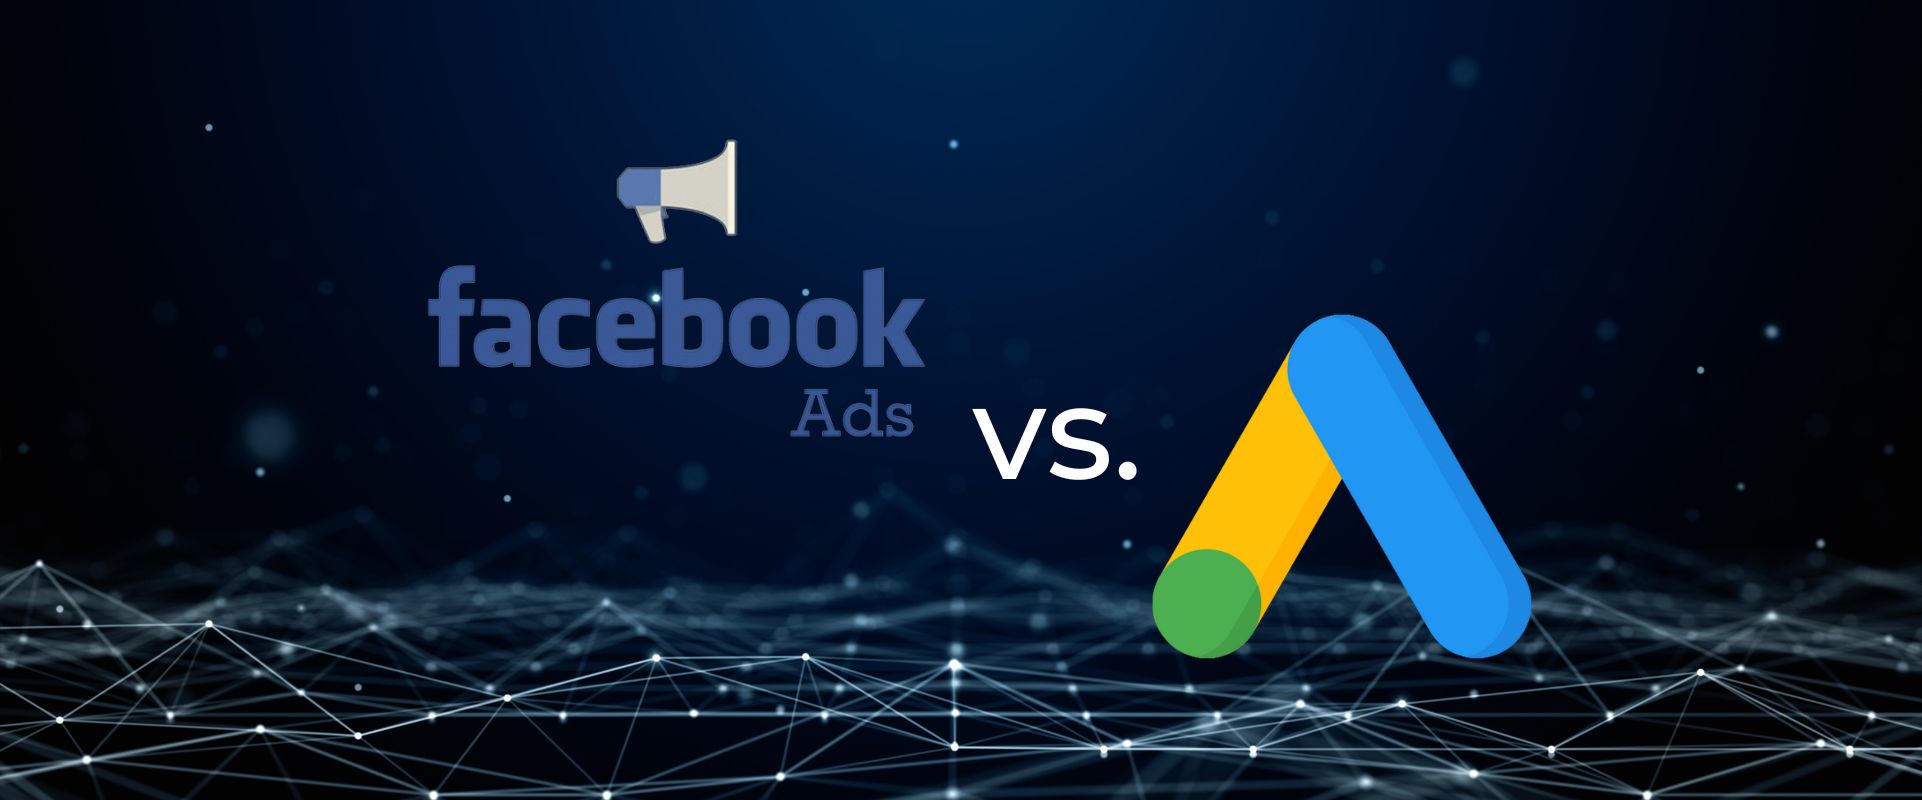 Facebook Ads vs Google Ads